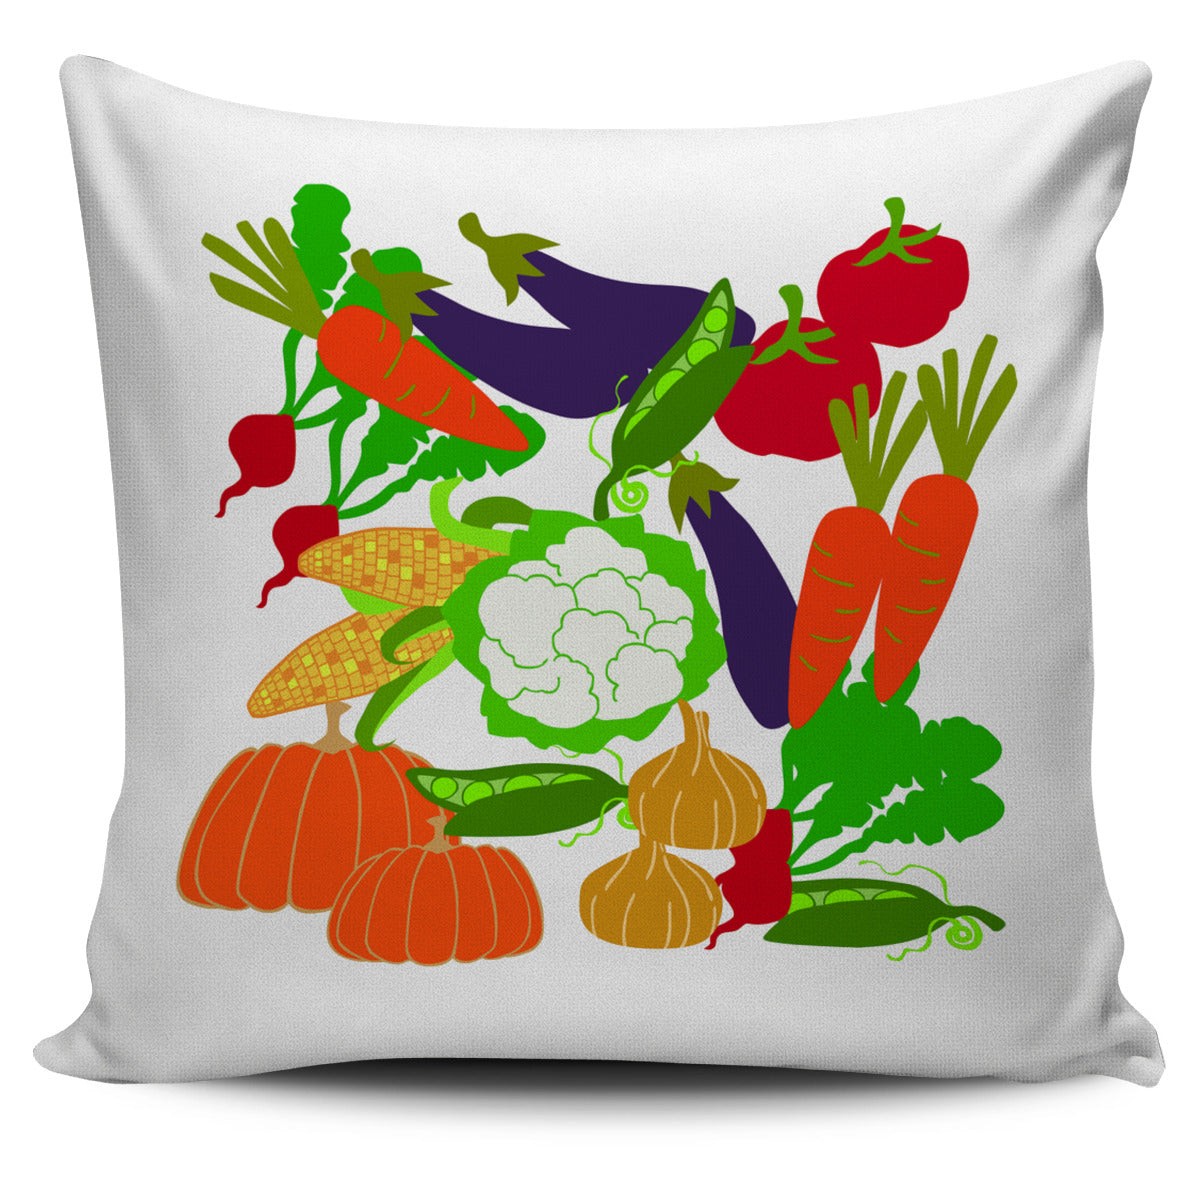 Vegetable Garden Pillow Cover